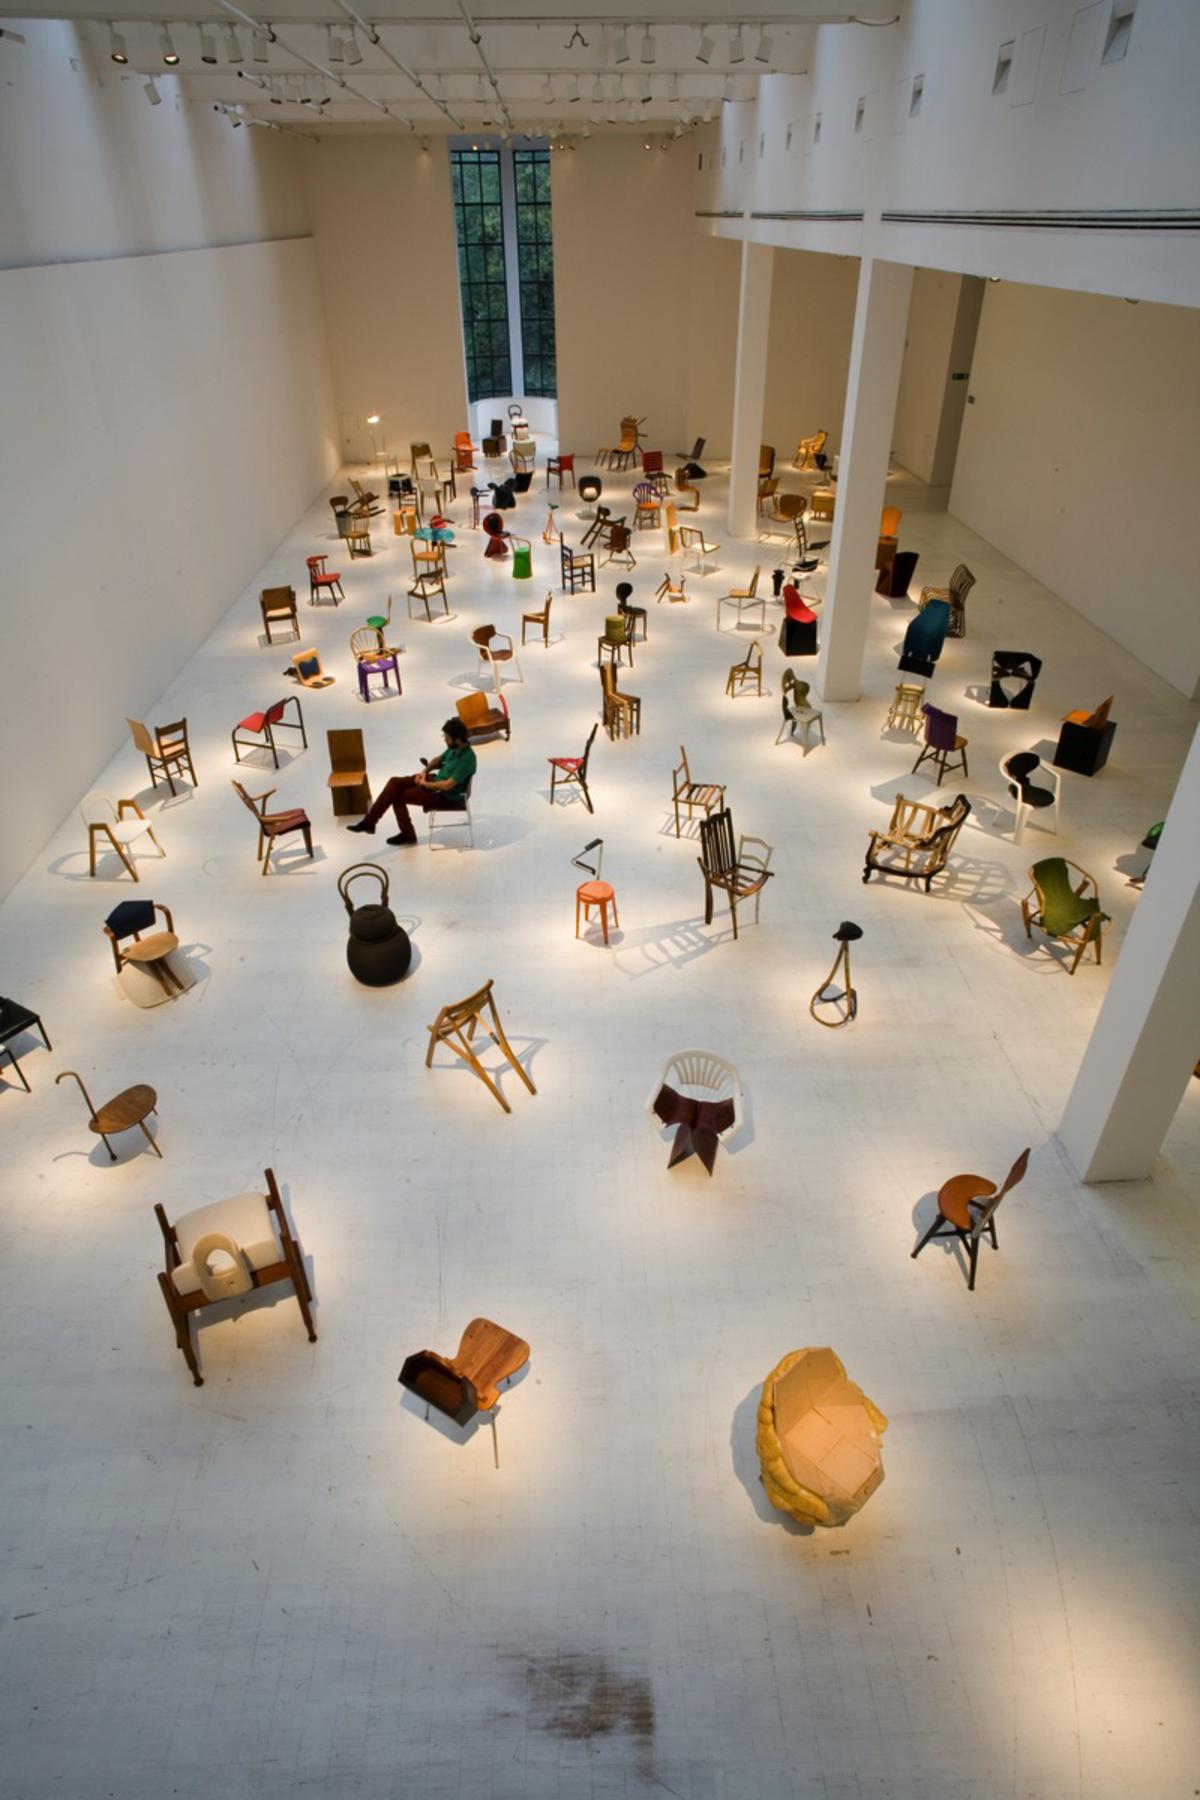 マルティーノ ガンパー 100日で100脚の椅子 企画展 Mimoca 丸亀市猪熊弦一郎現代美術館